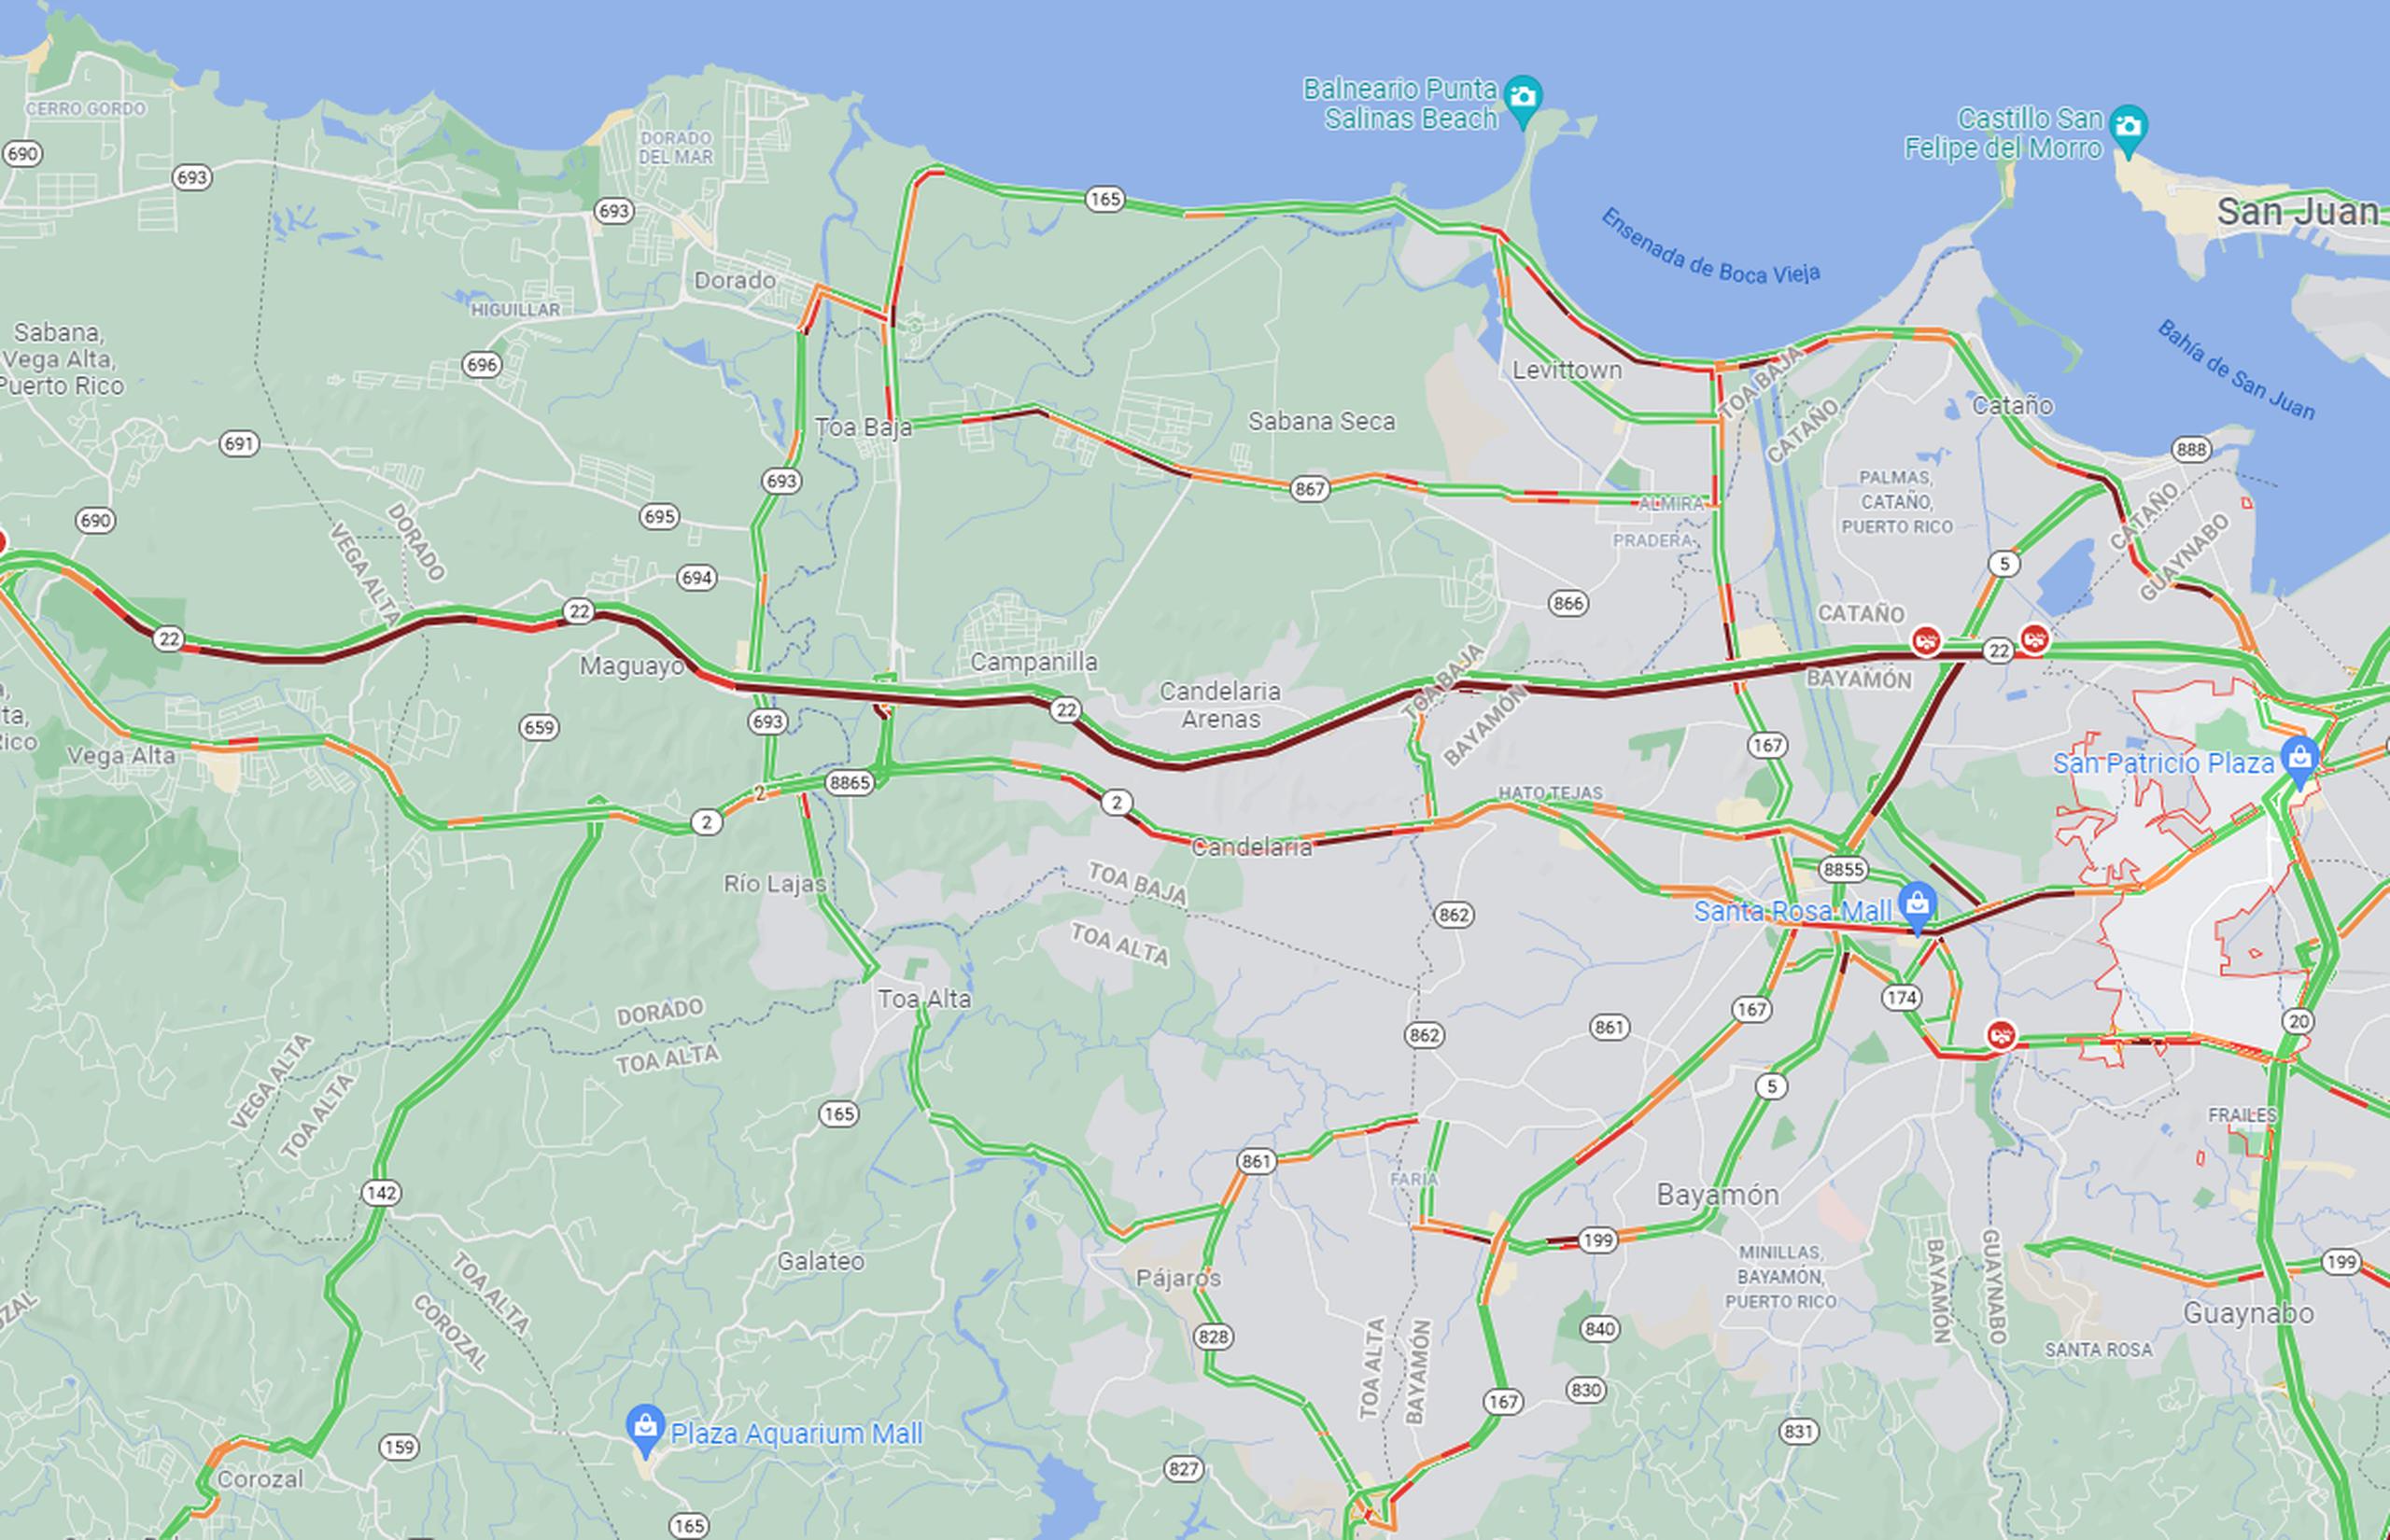 La línea roja representa la gran congestión vehicular en el expreso PR-22 por los accidentes de tránsito.